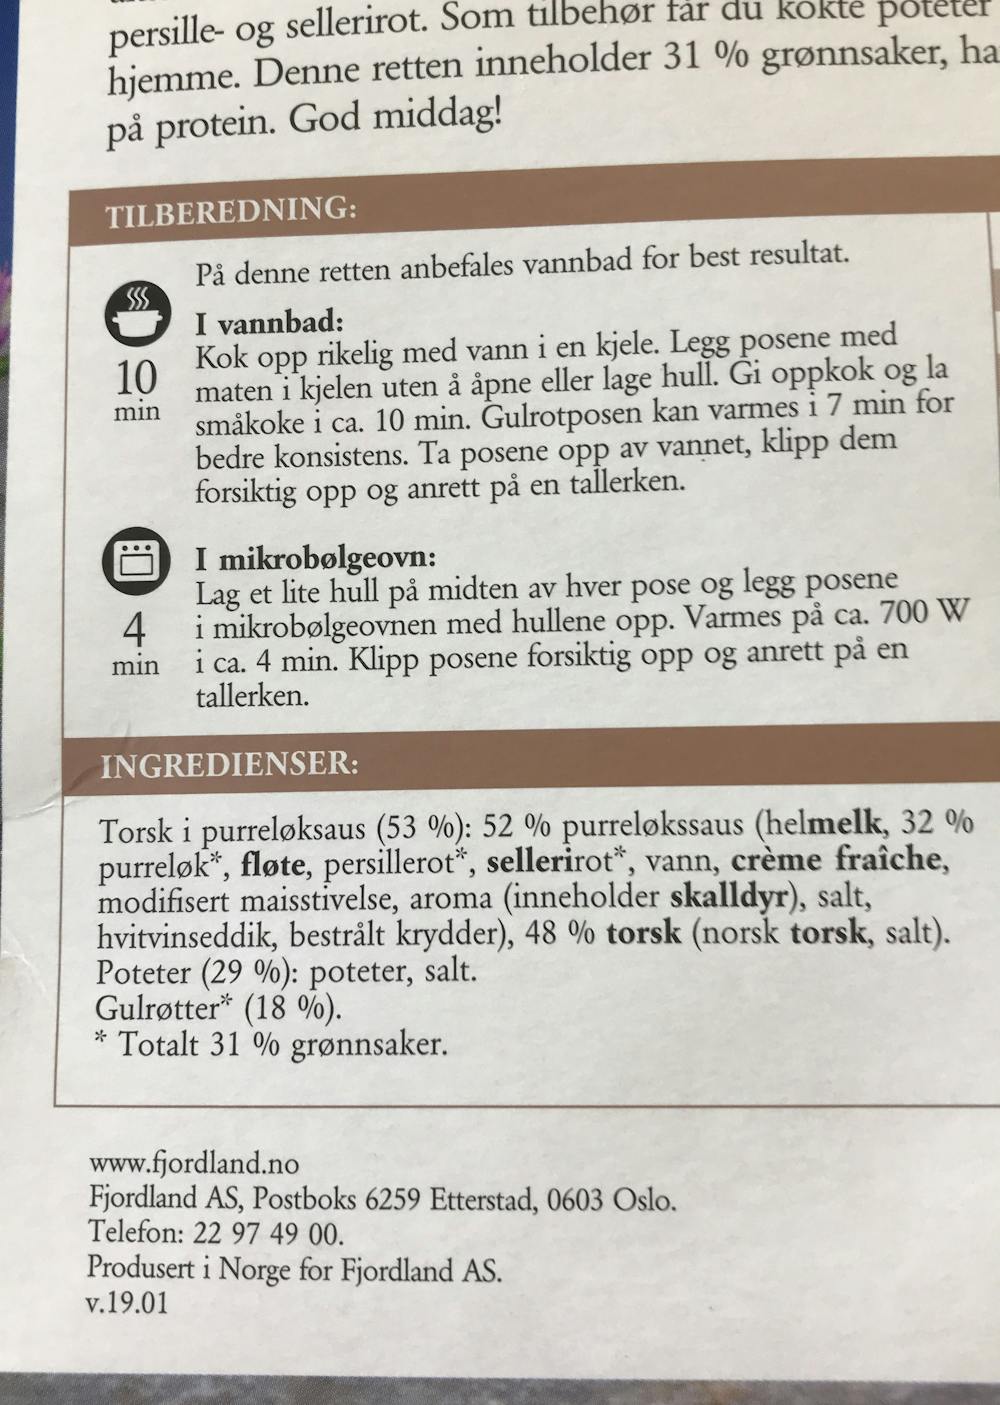 Ingredienslisten til Fjordland Torsk med purrløksaus, gulrøtter og poteter